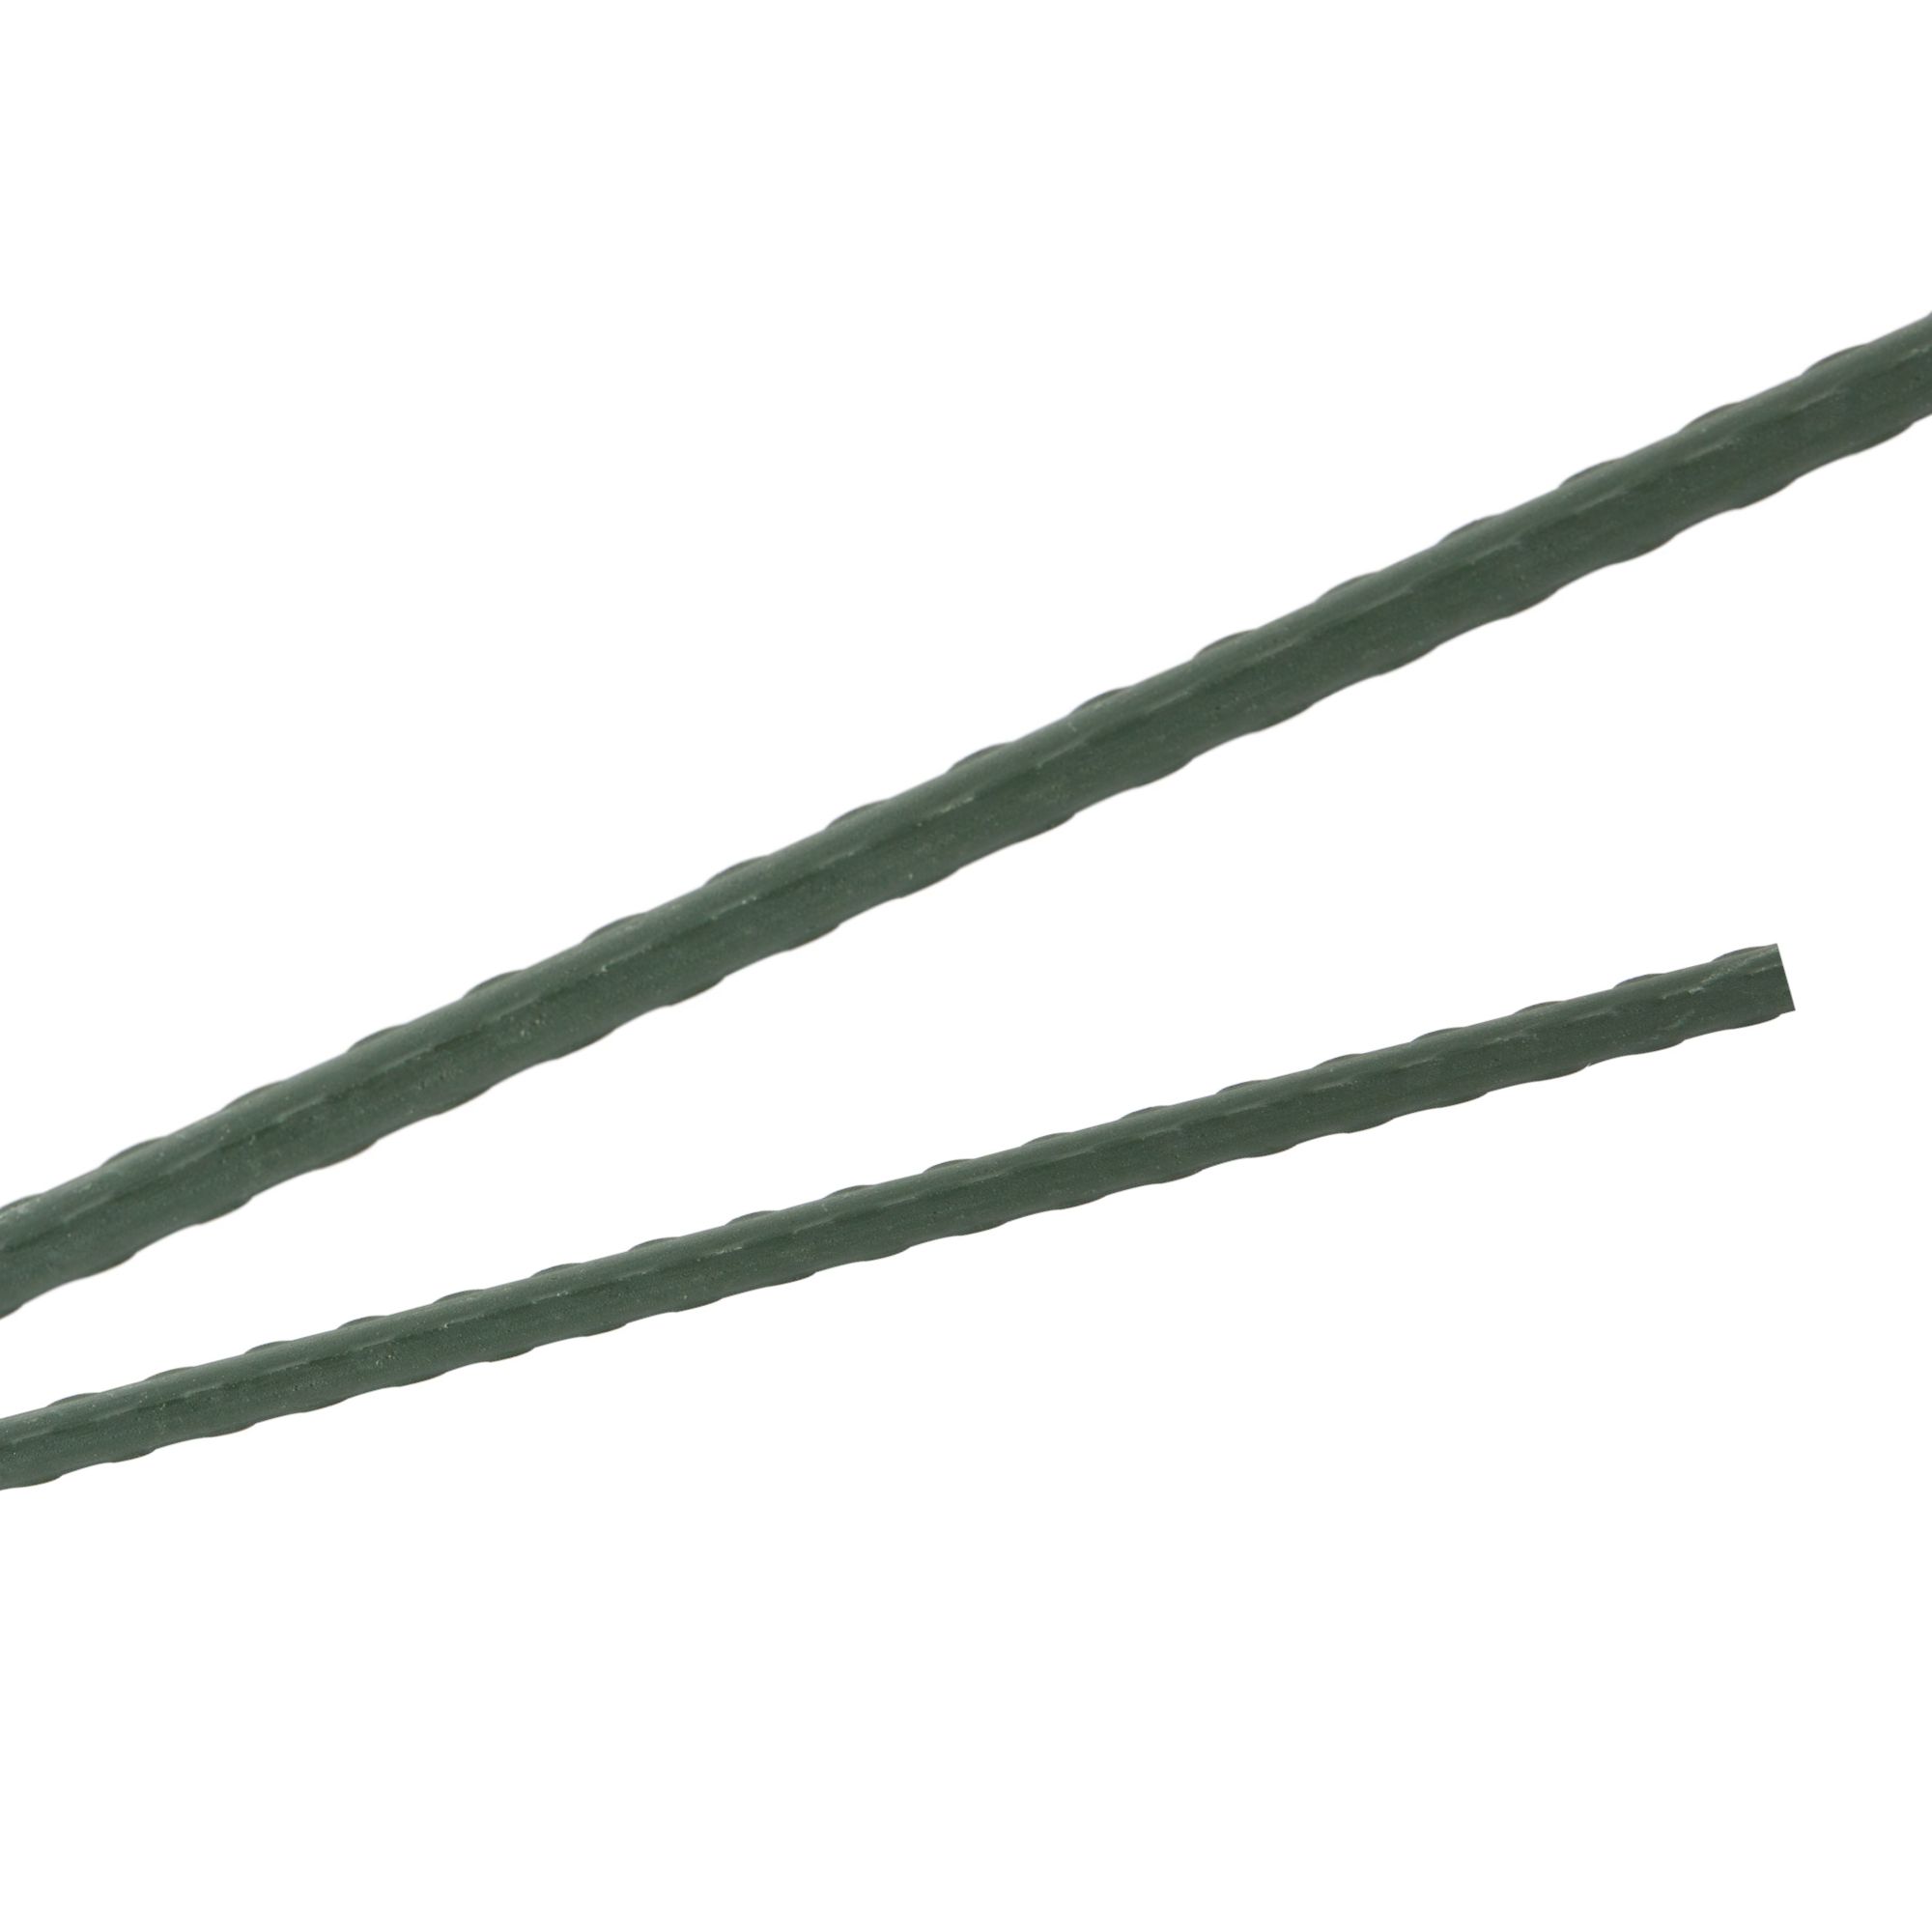 Tyč podpěrná, 16mm, 120cm, kov+PVC, zelená 0.150000 Kg GIGA Sklad20 32013 134